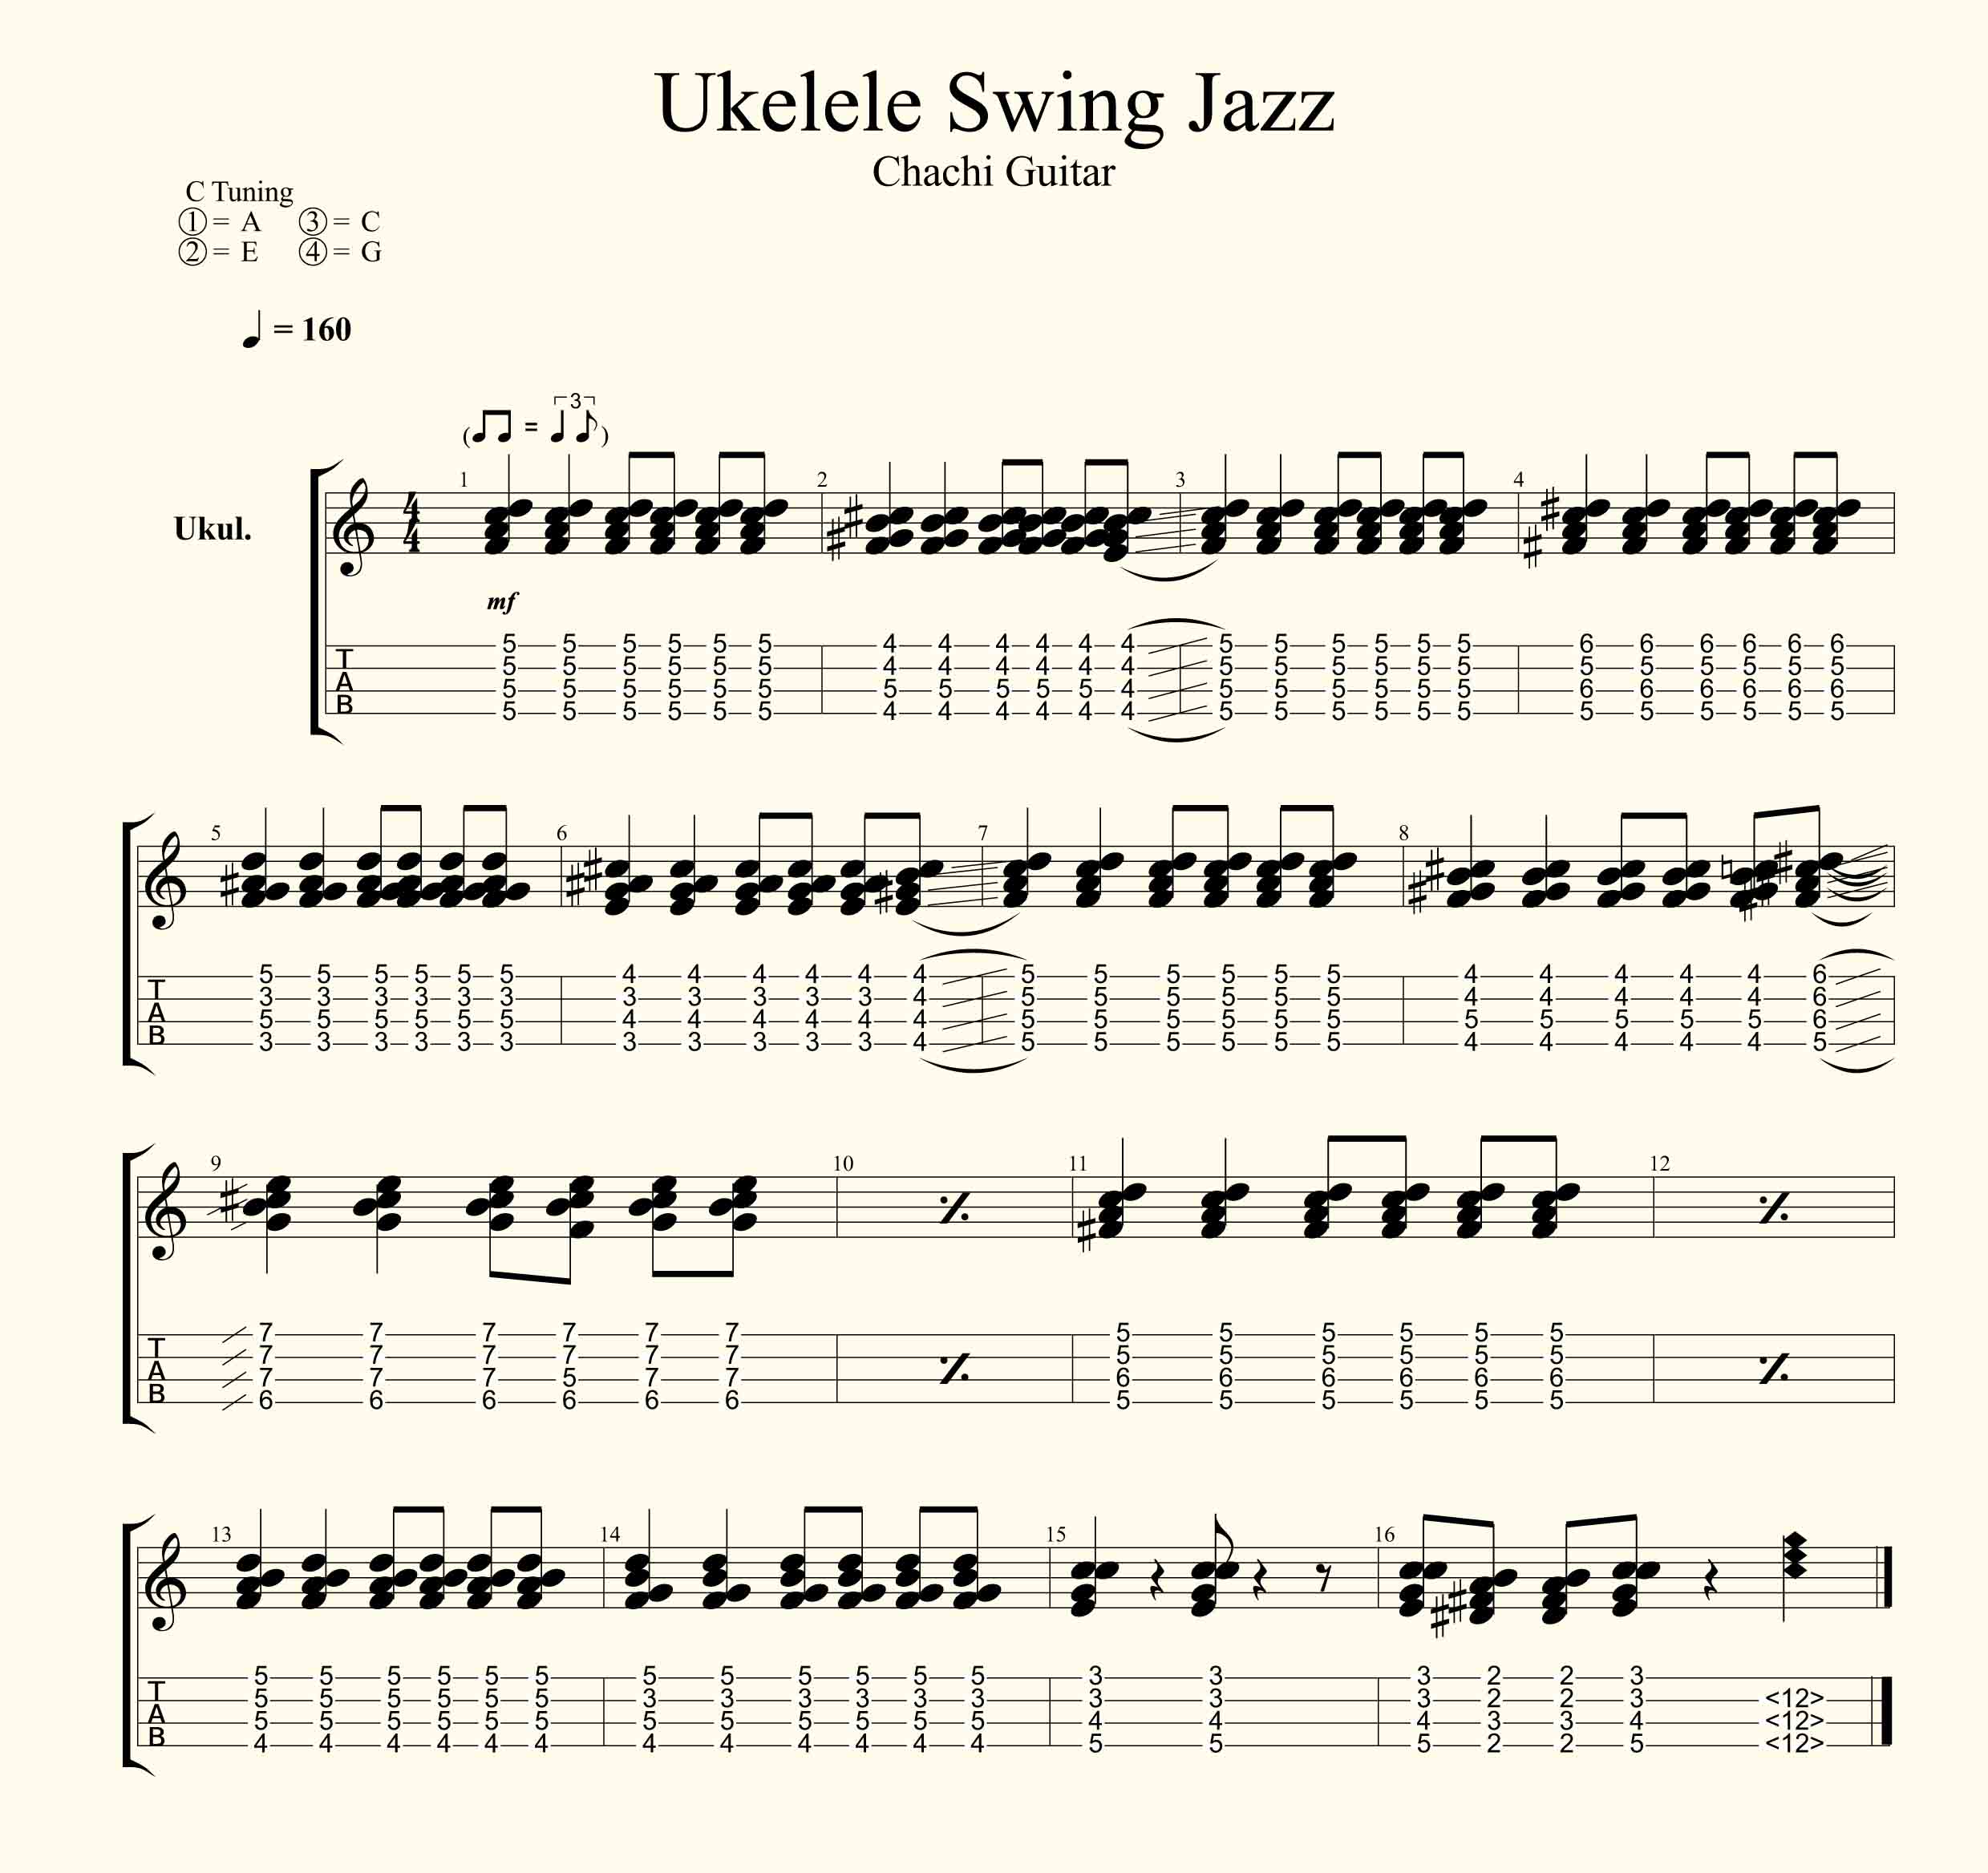 Ukelele Swing Jazz Acordes Faciles Como Tocar Jazz Chachi Guitar Ver mas ideas sobre ukelele, canciones cuando empezamos a tocar el ukelele lo primero que queremos saber es cuales son los acordes basicos. ukelele swing jazz acordes faciles